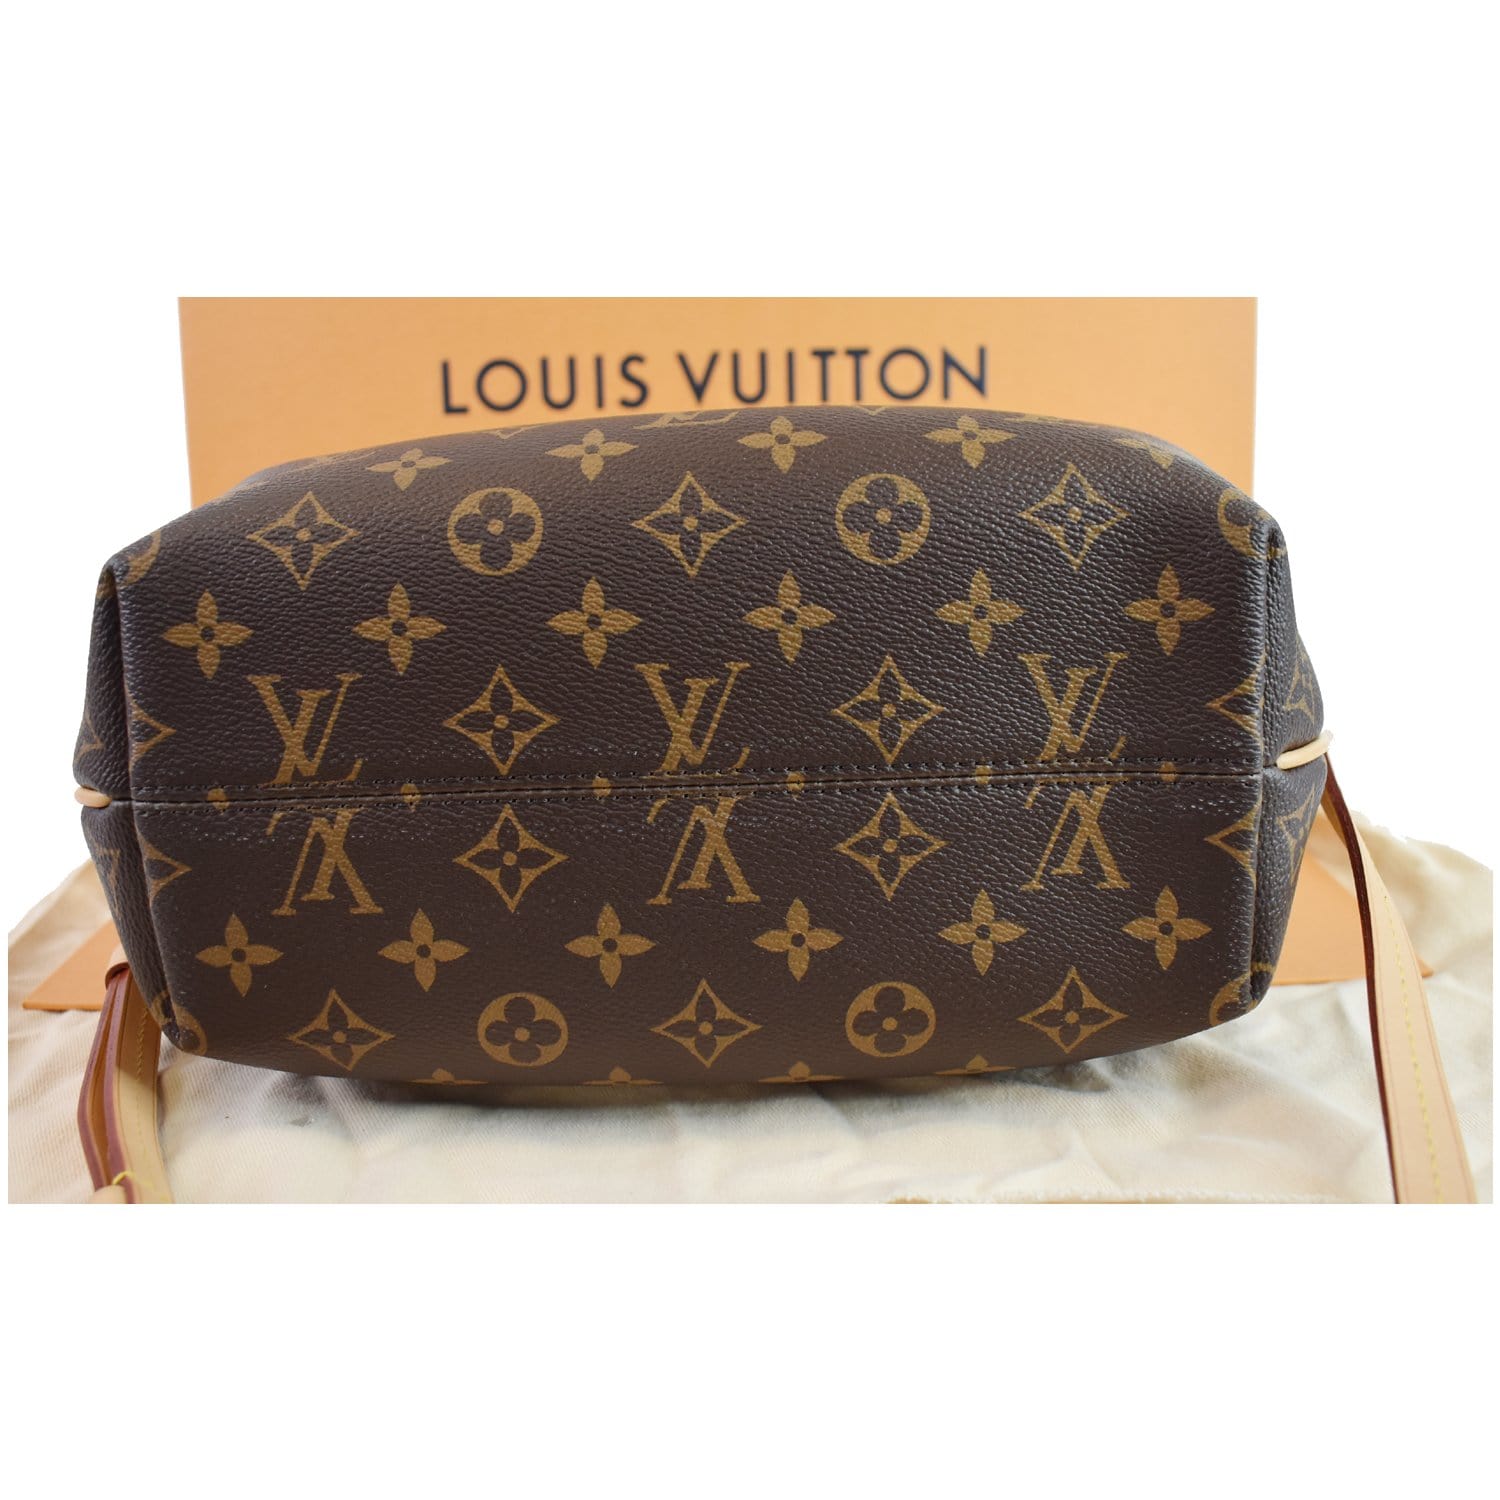 Turenne cloth handbag Louis Vuitton Brown in Cloth - 35549930